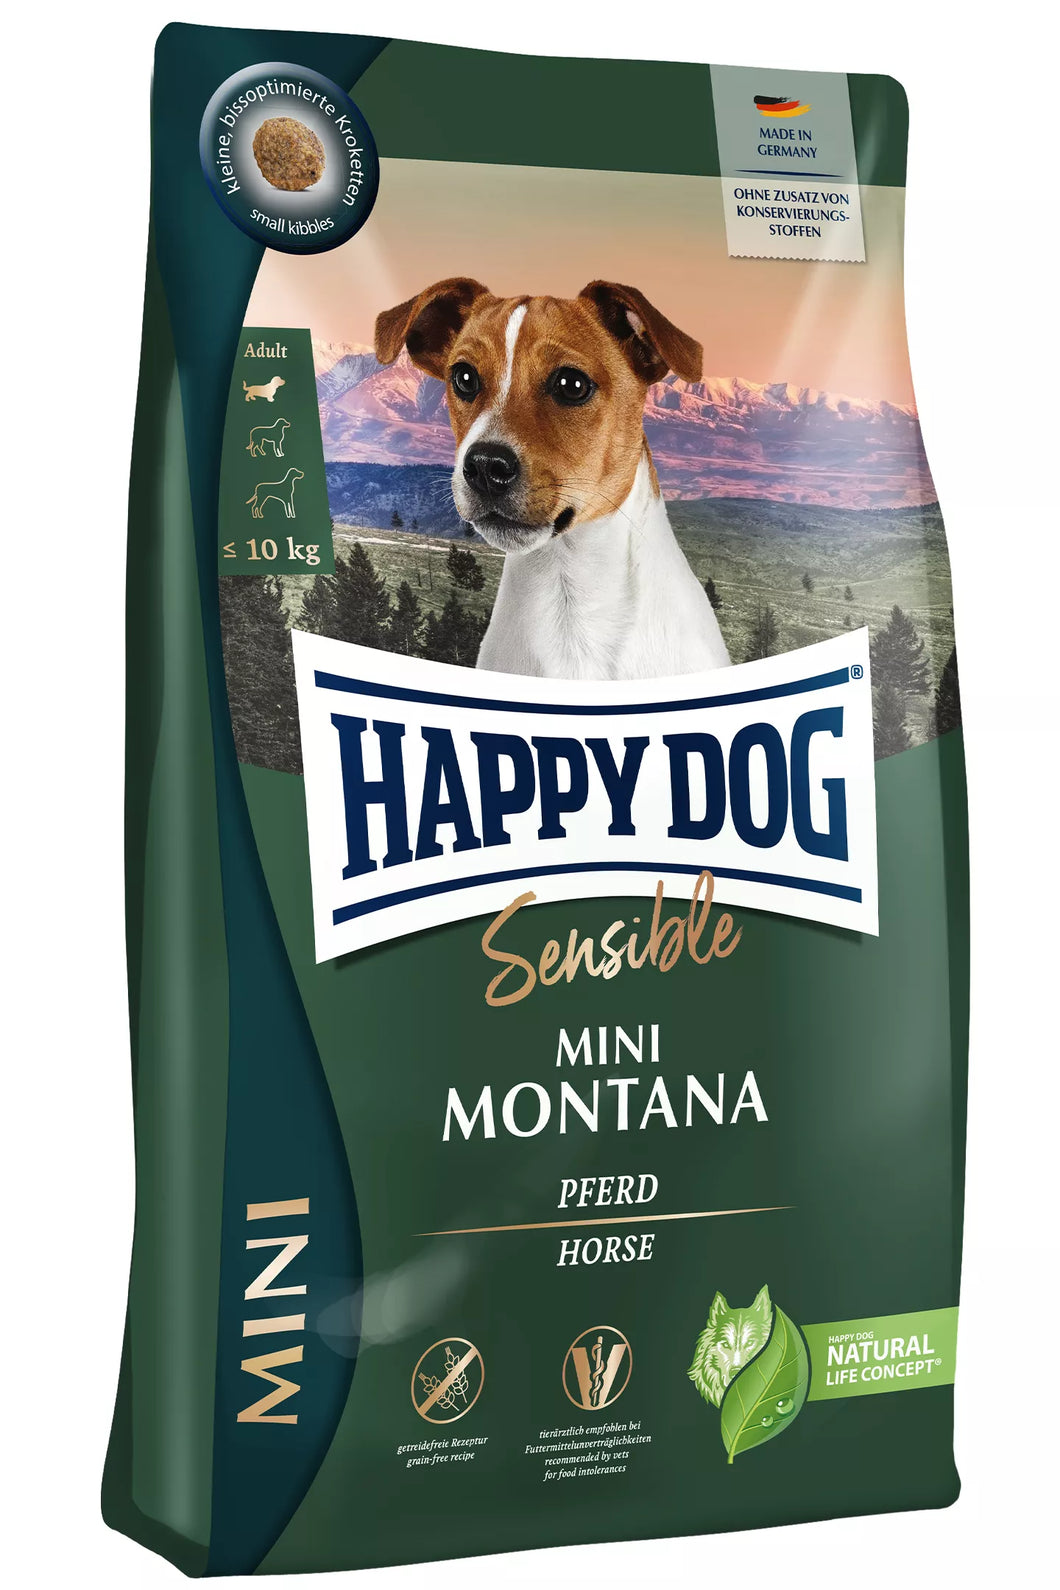 HAPPY DOG Sensible Mini Montana